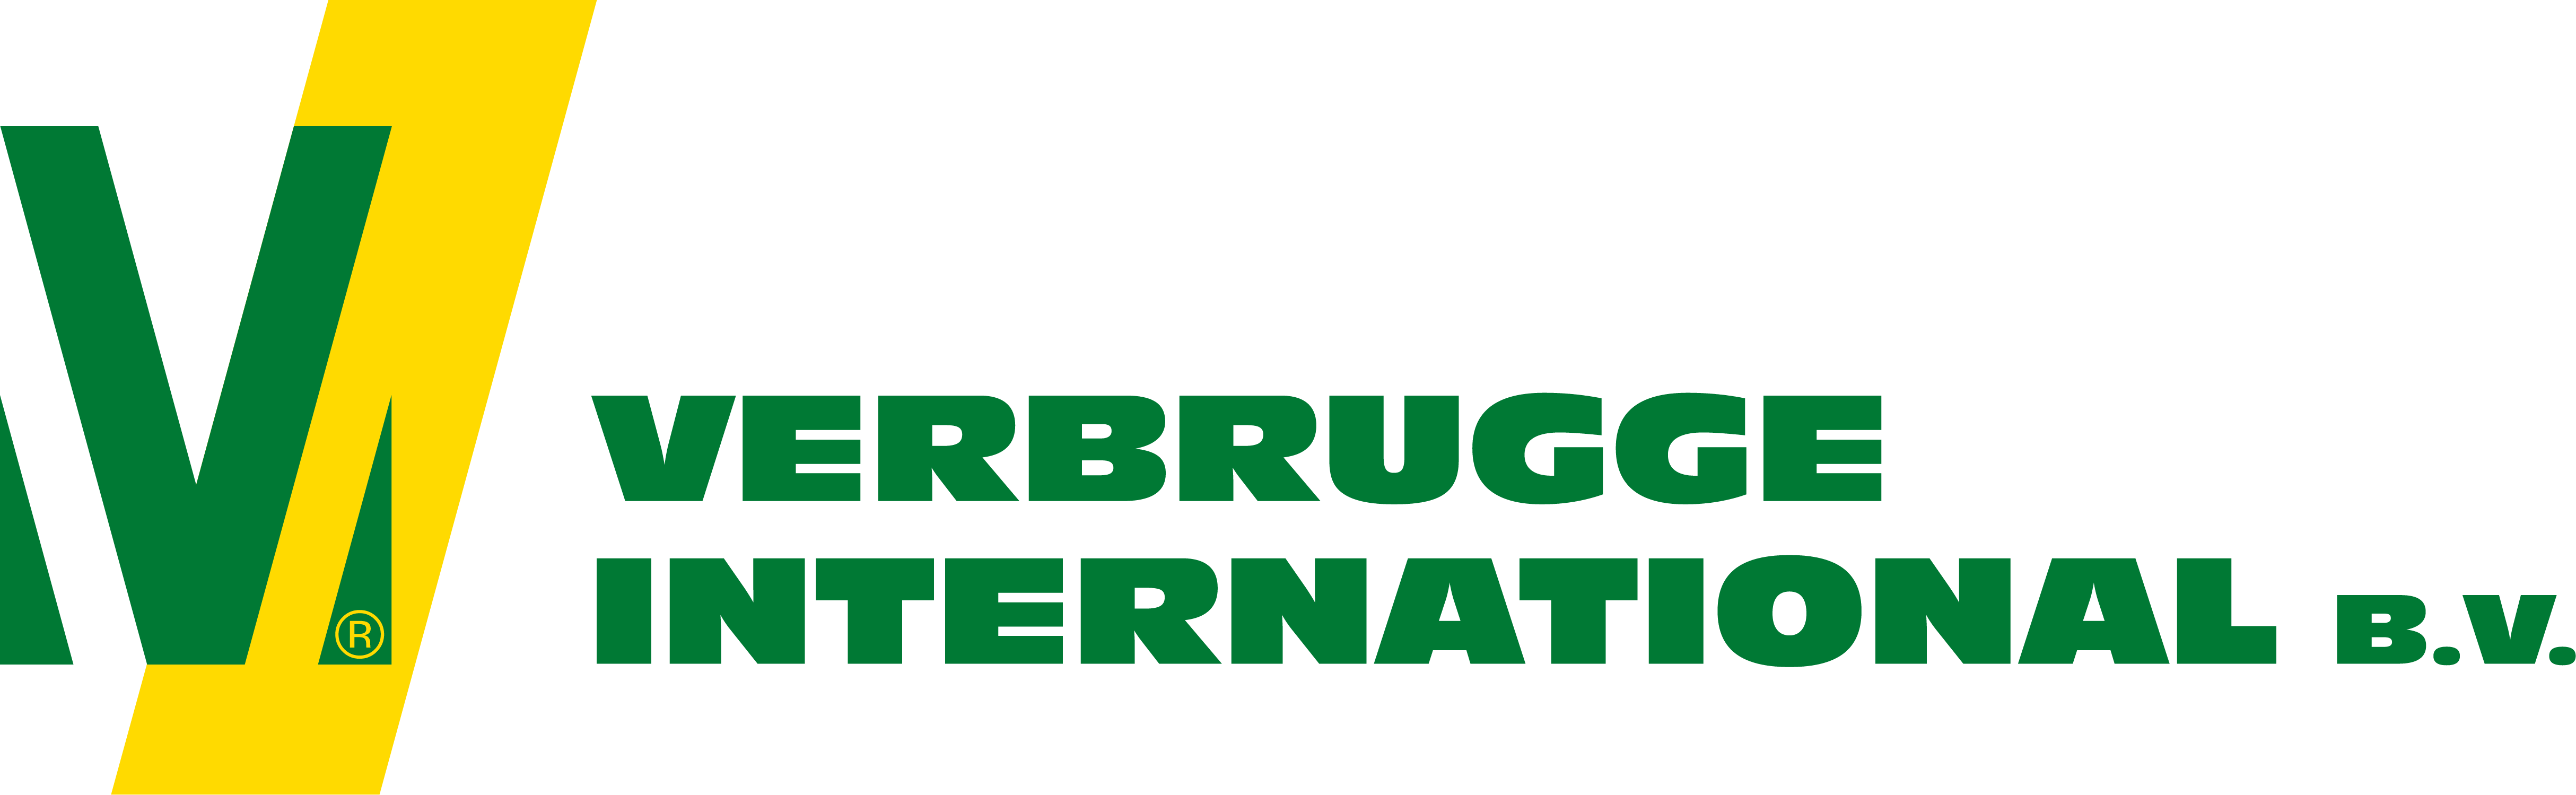 Verbrugge International